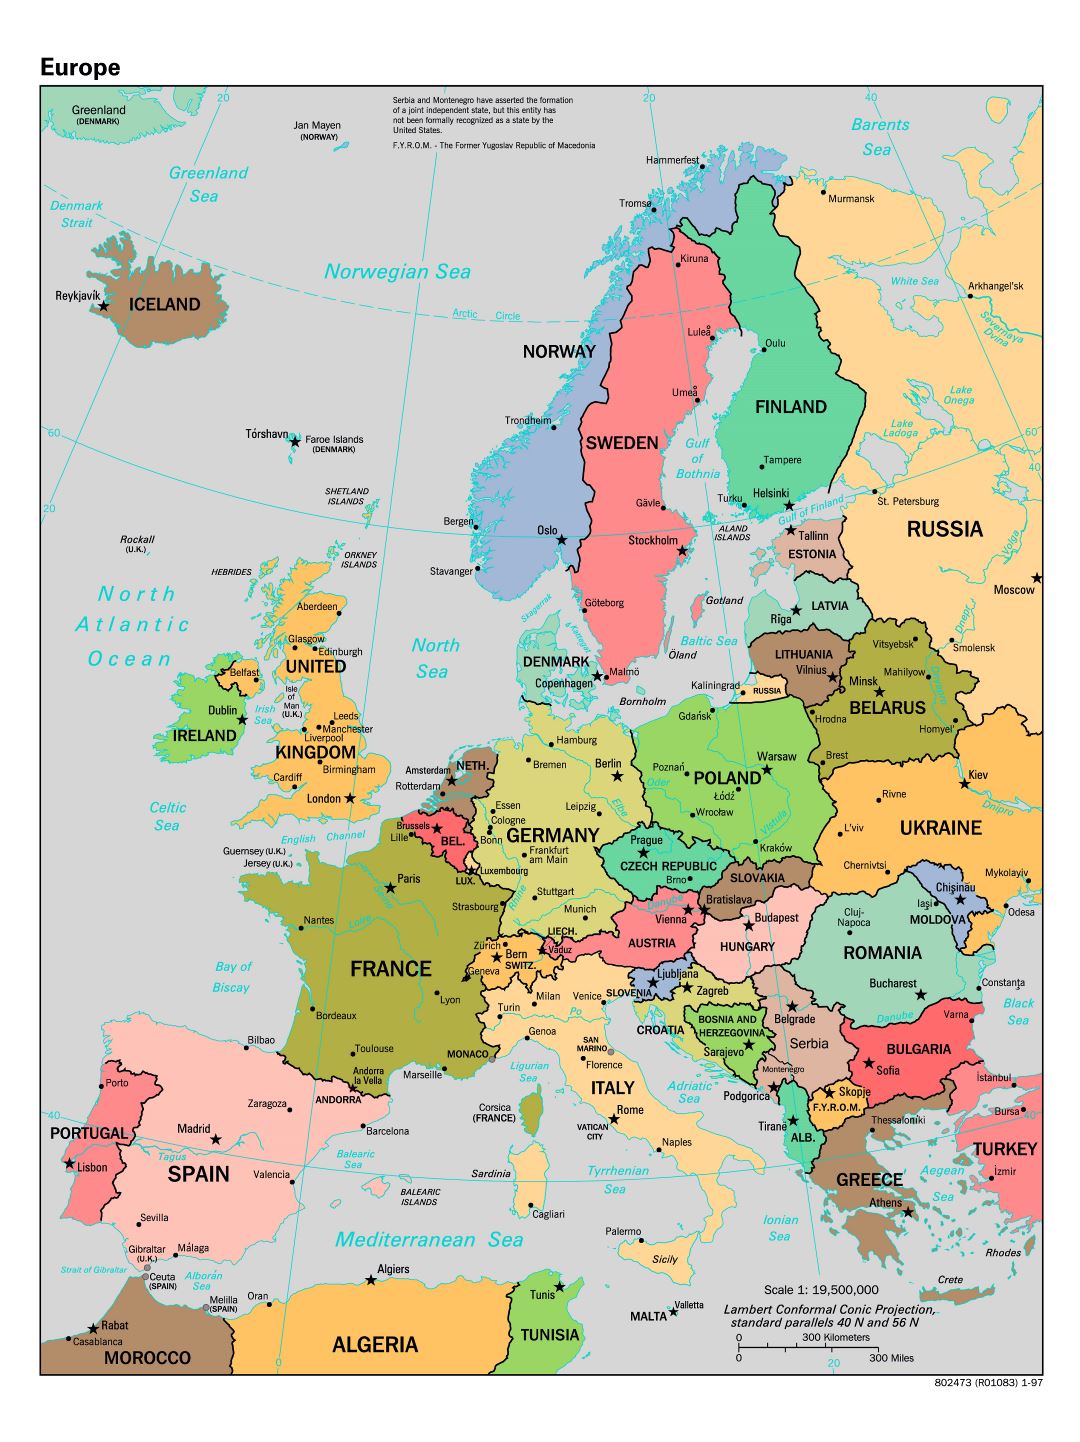 Mapa político a gran escala de Europa - 1997